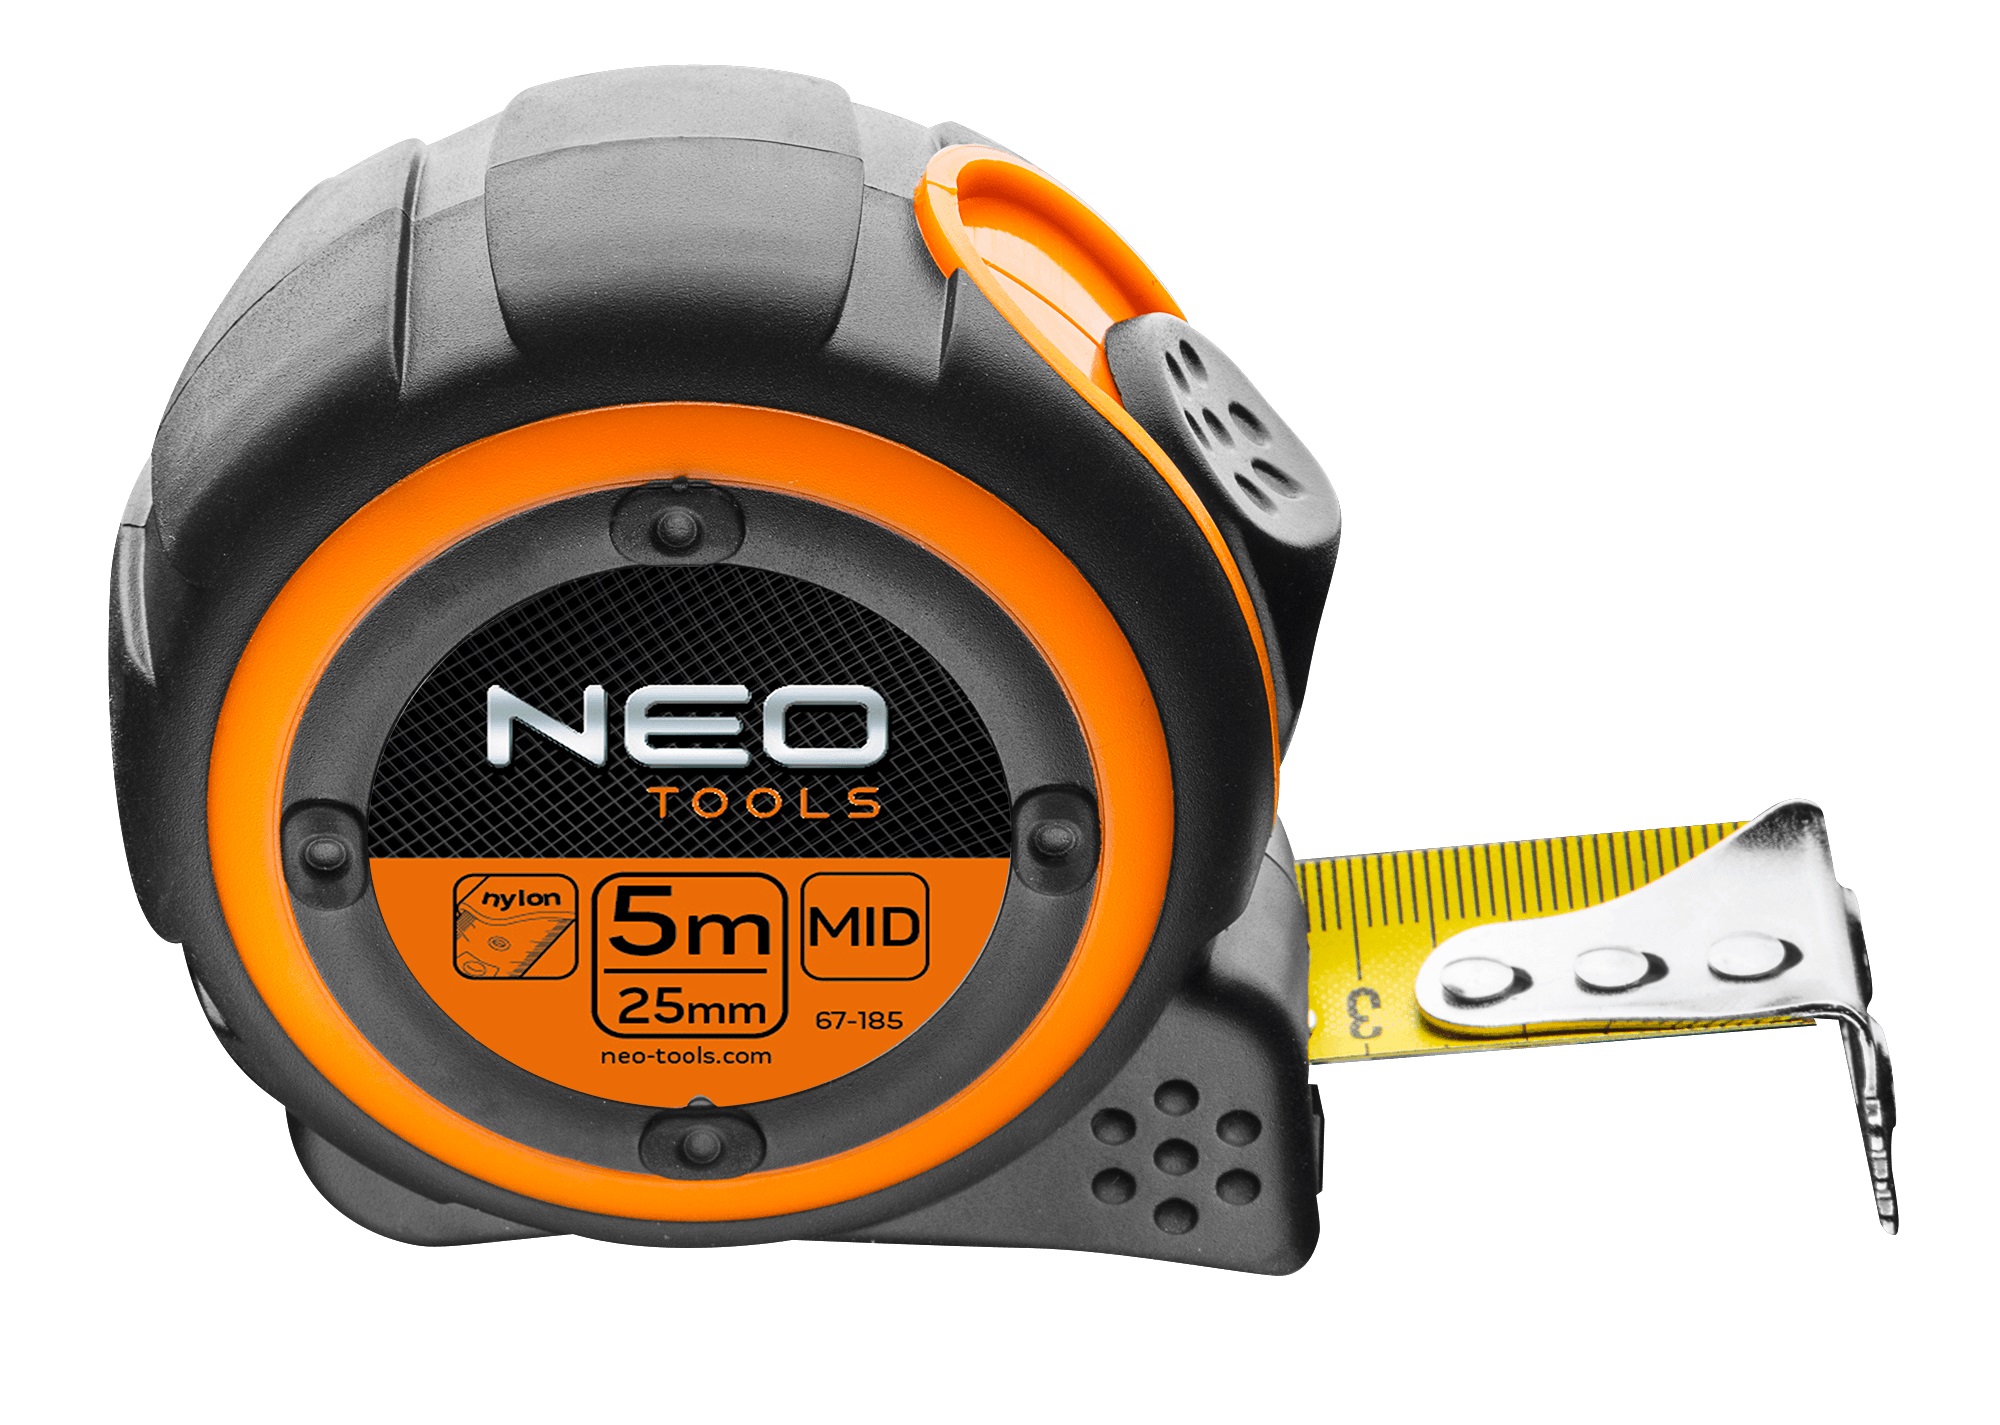 Neo Tools 67-185